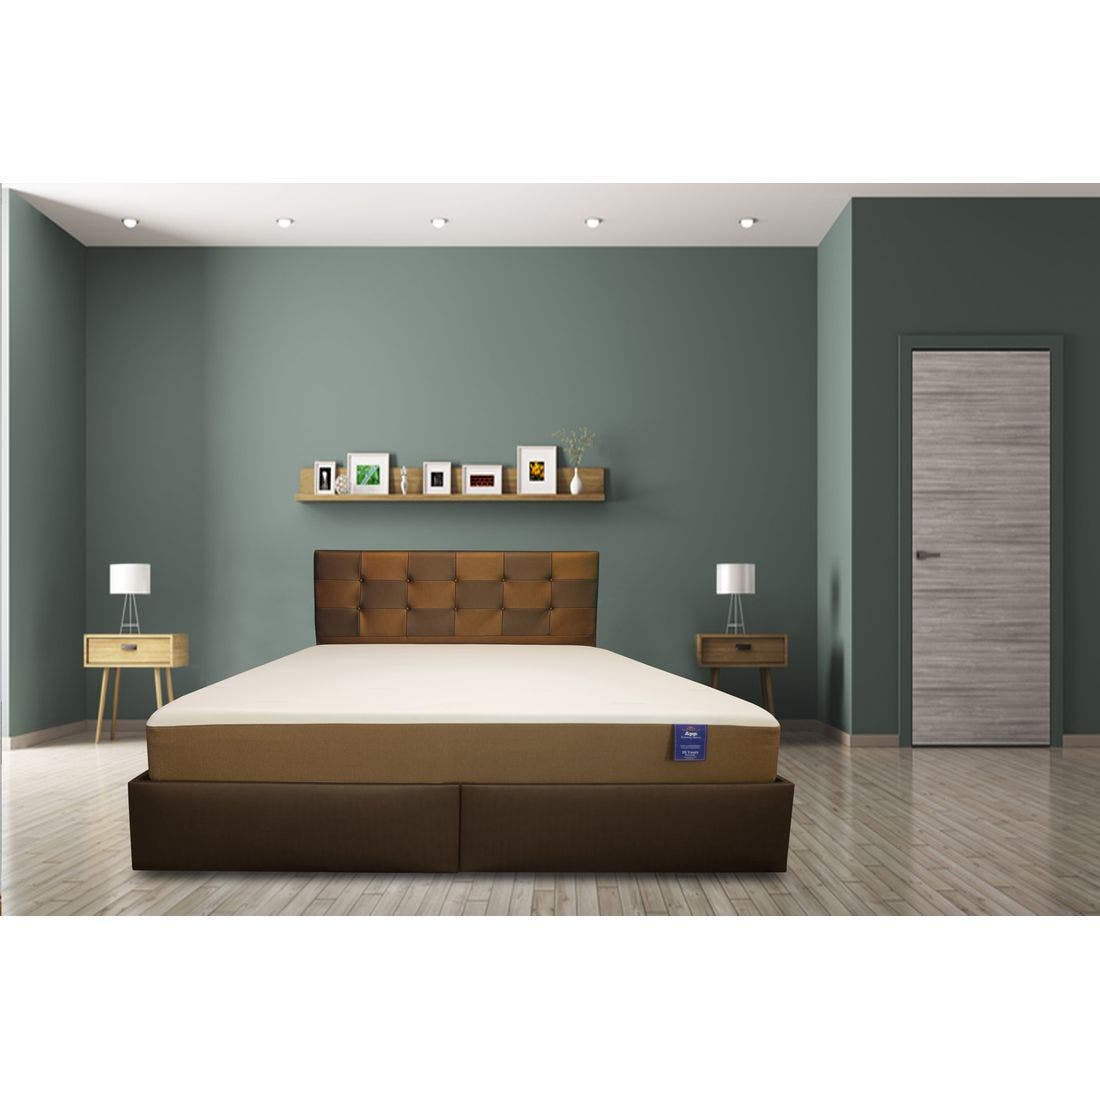 39015079-mattress-bedding-mattresses-pocket-spring-mattress-31